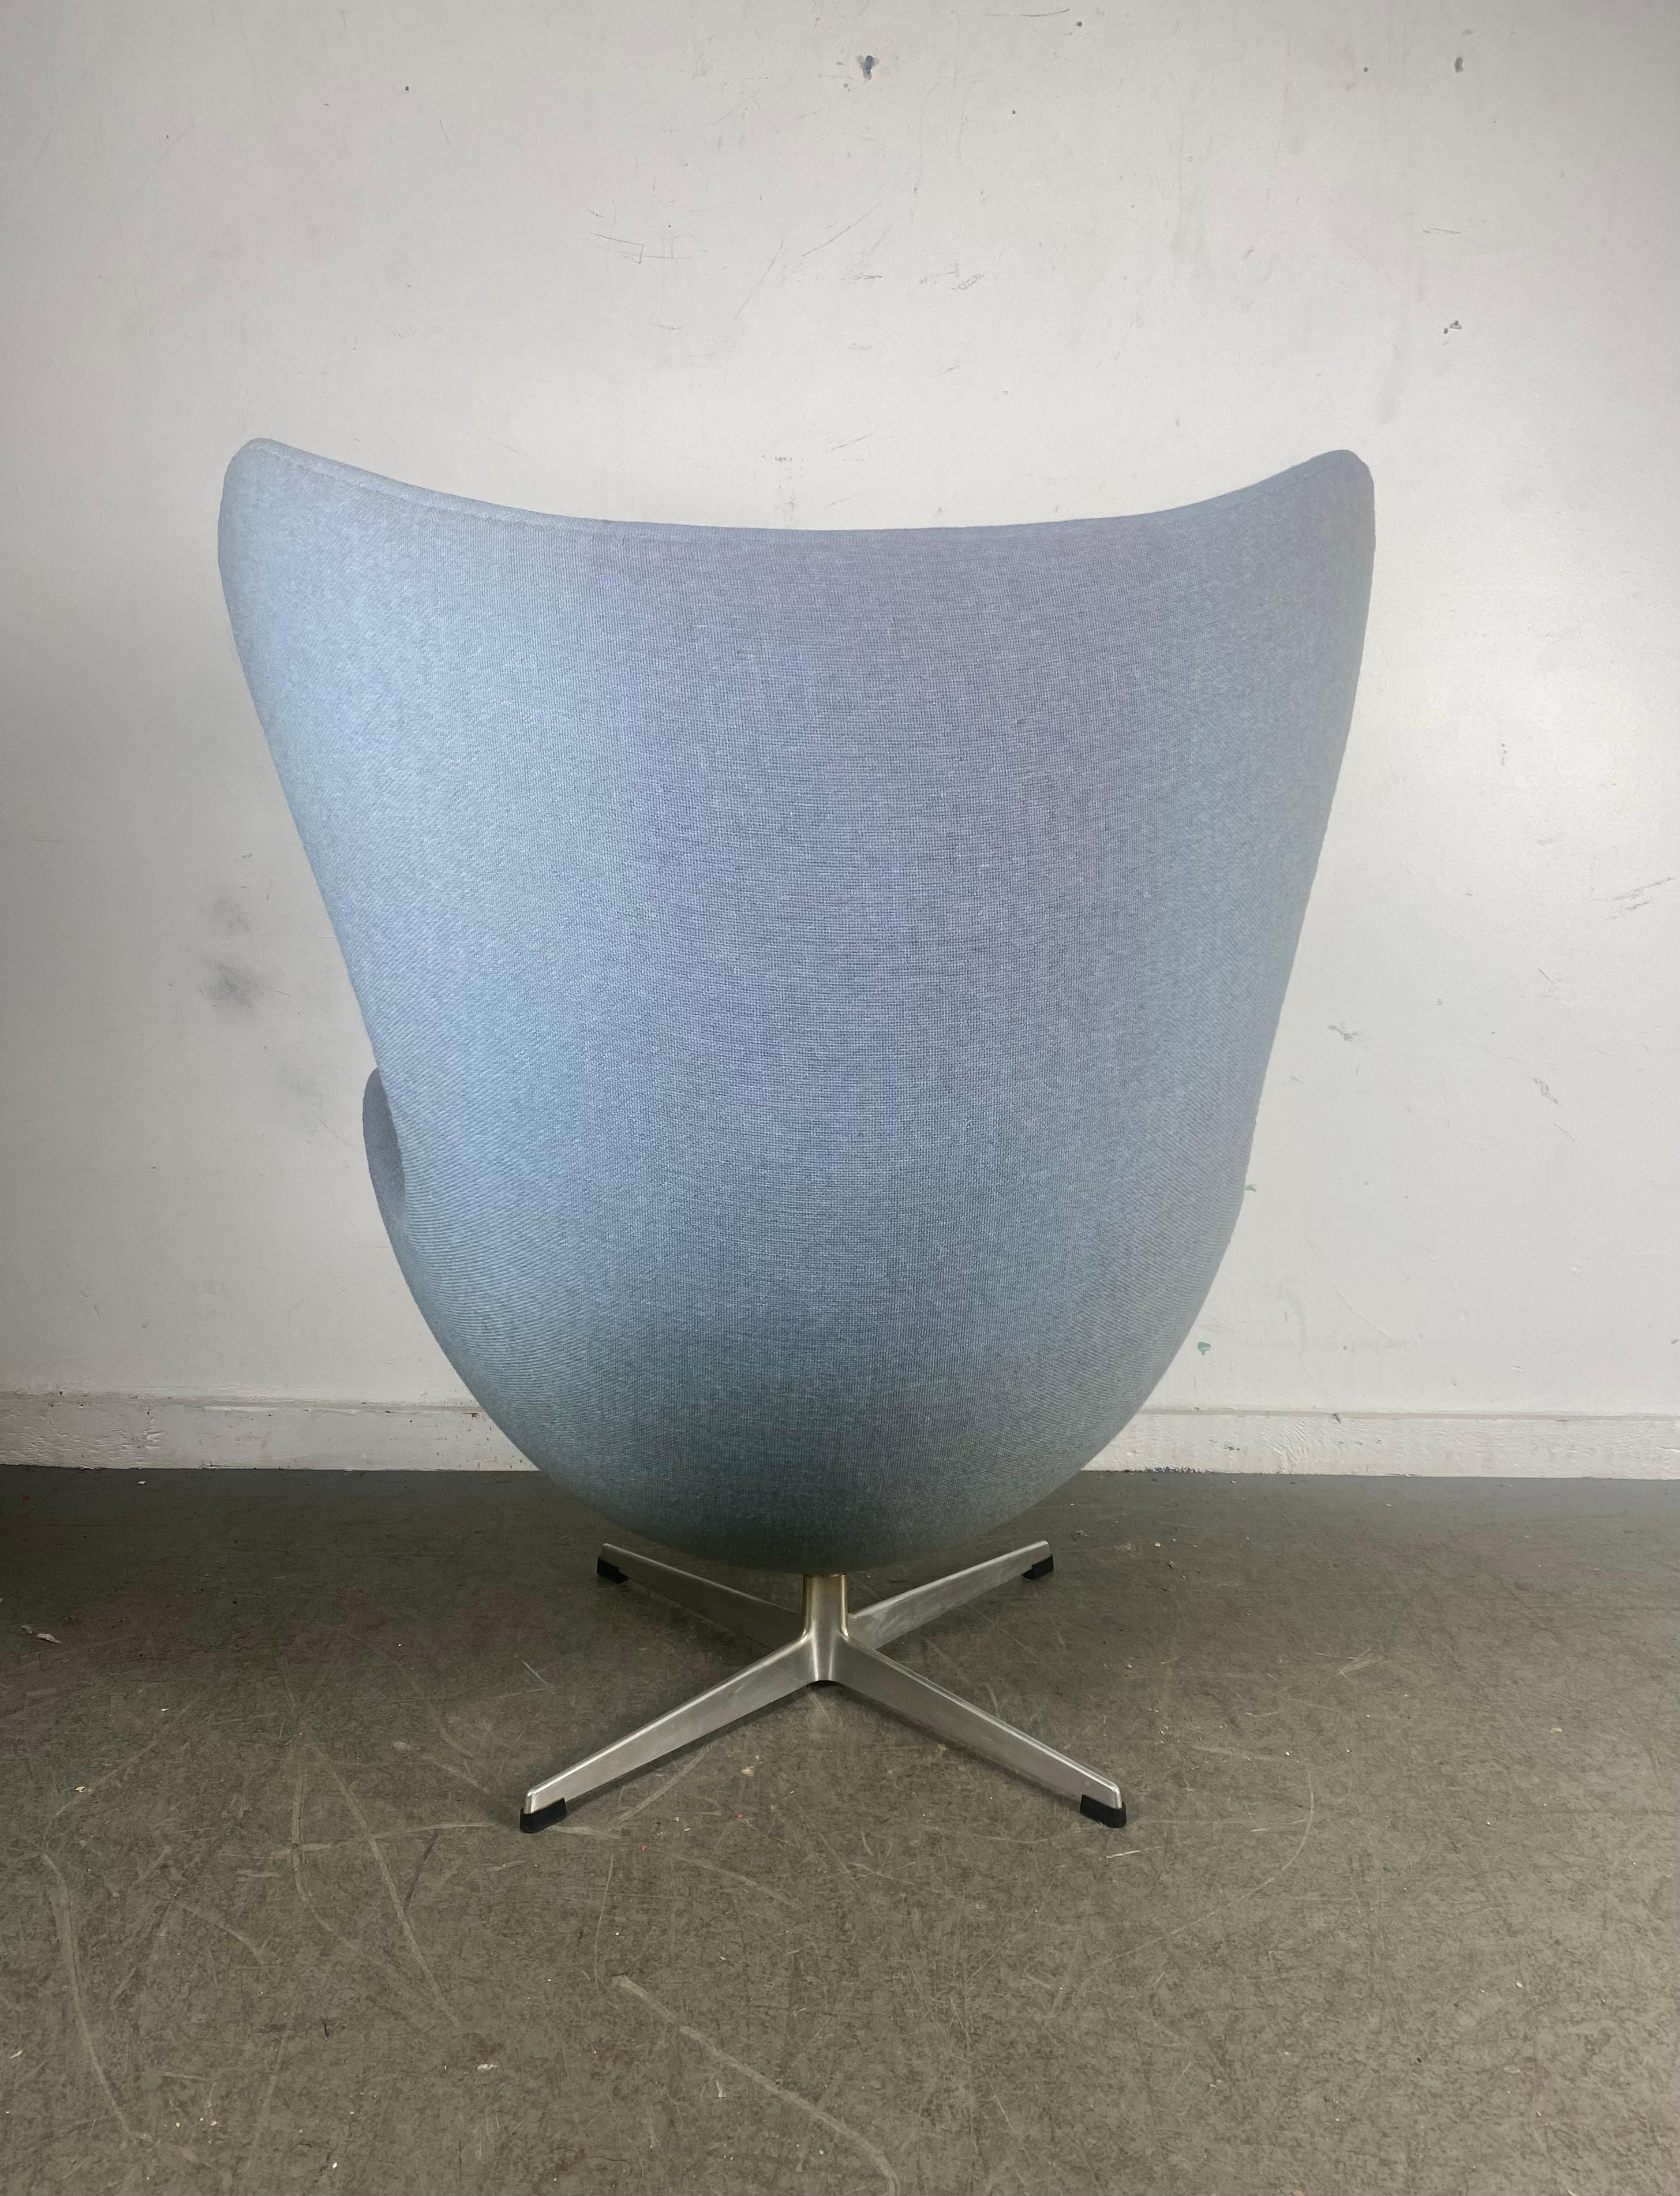 Mid-Century Modern Classic 1960s  Egg Chair designed by Arne Jacobsen for Fritzhansen / Denmark